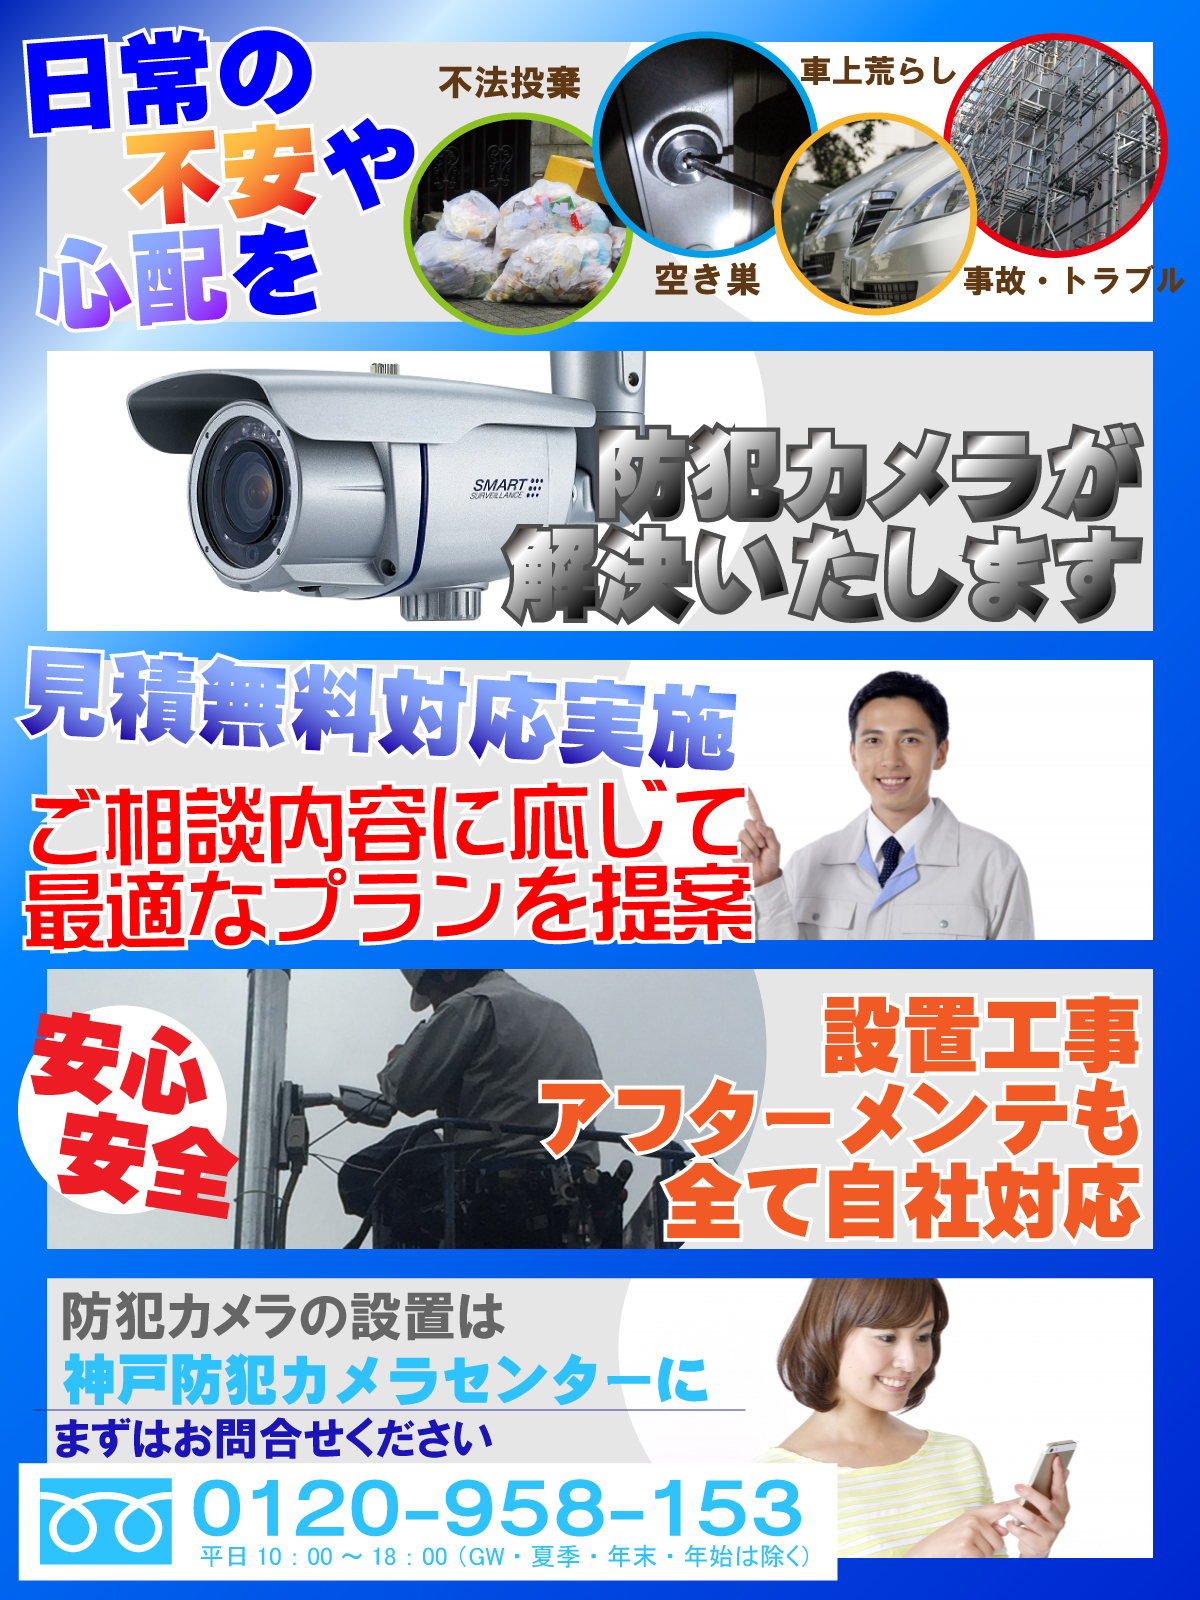 加古郡播磨町での防犯カメラ設置について